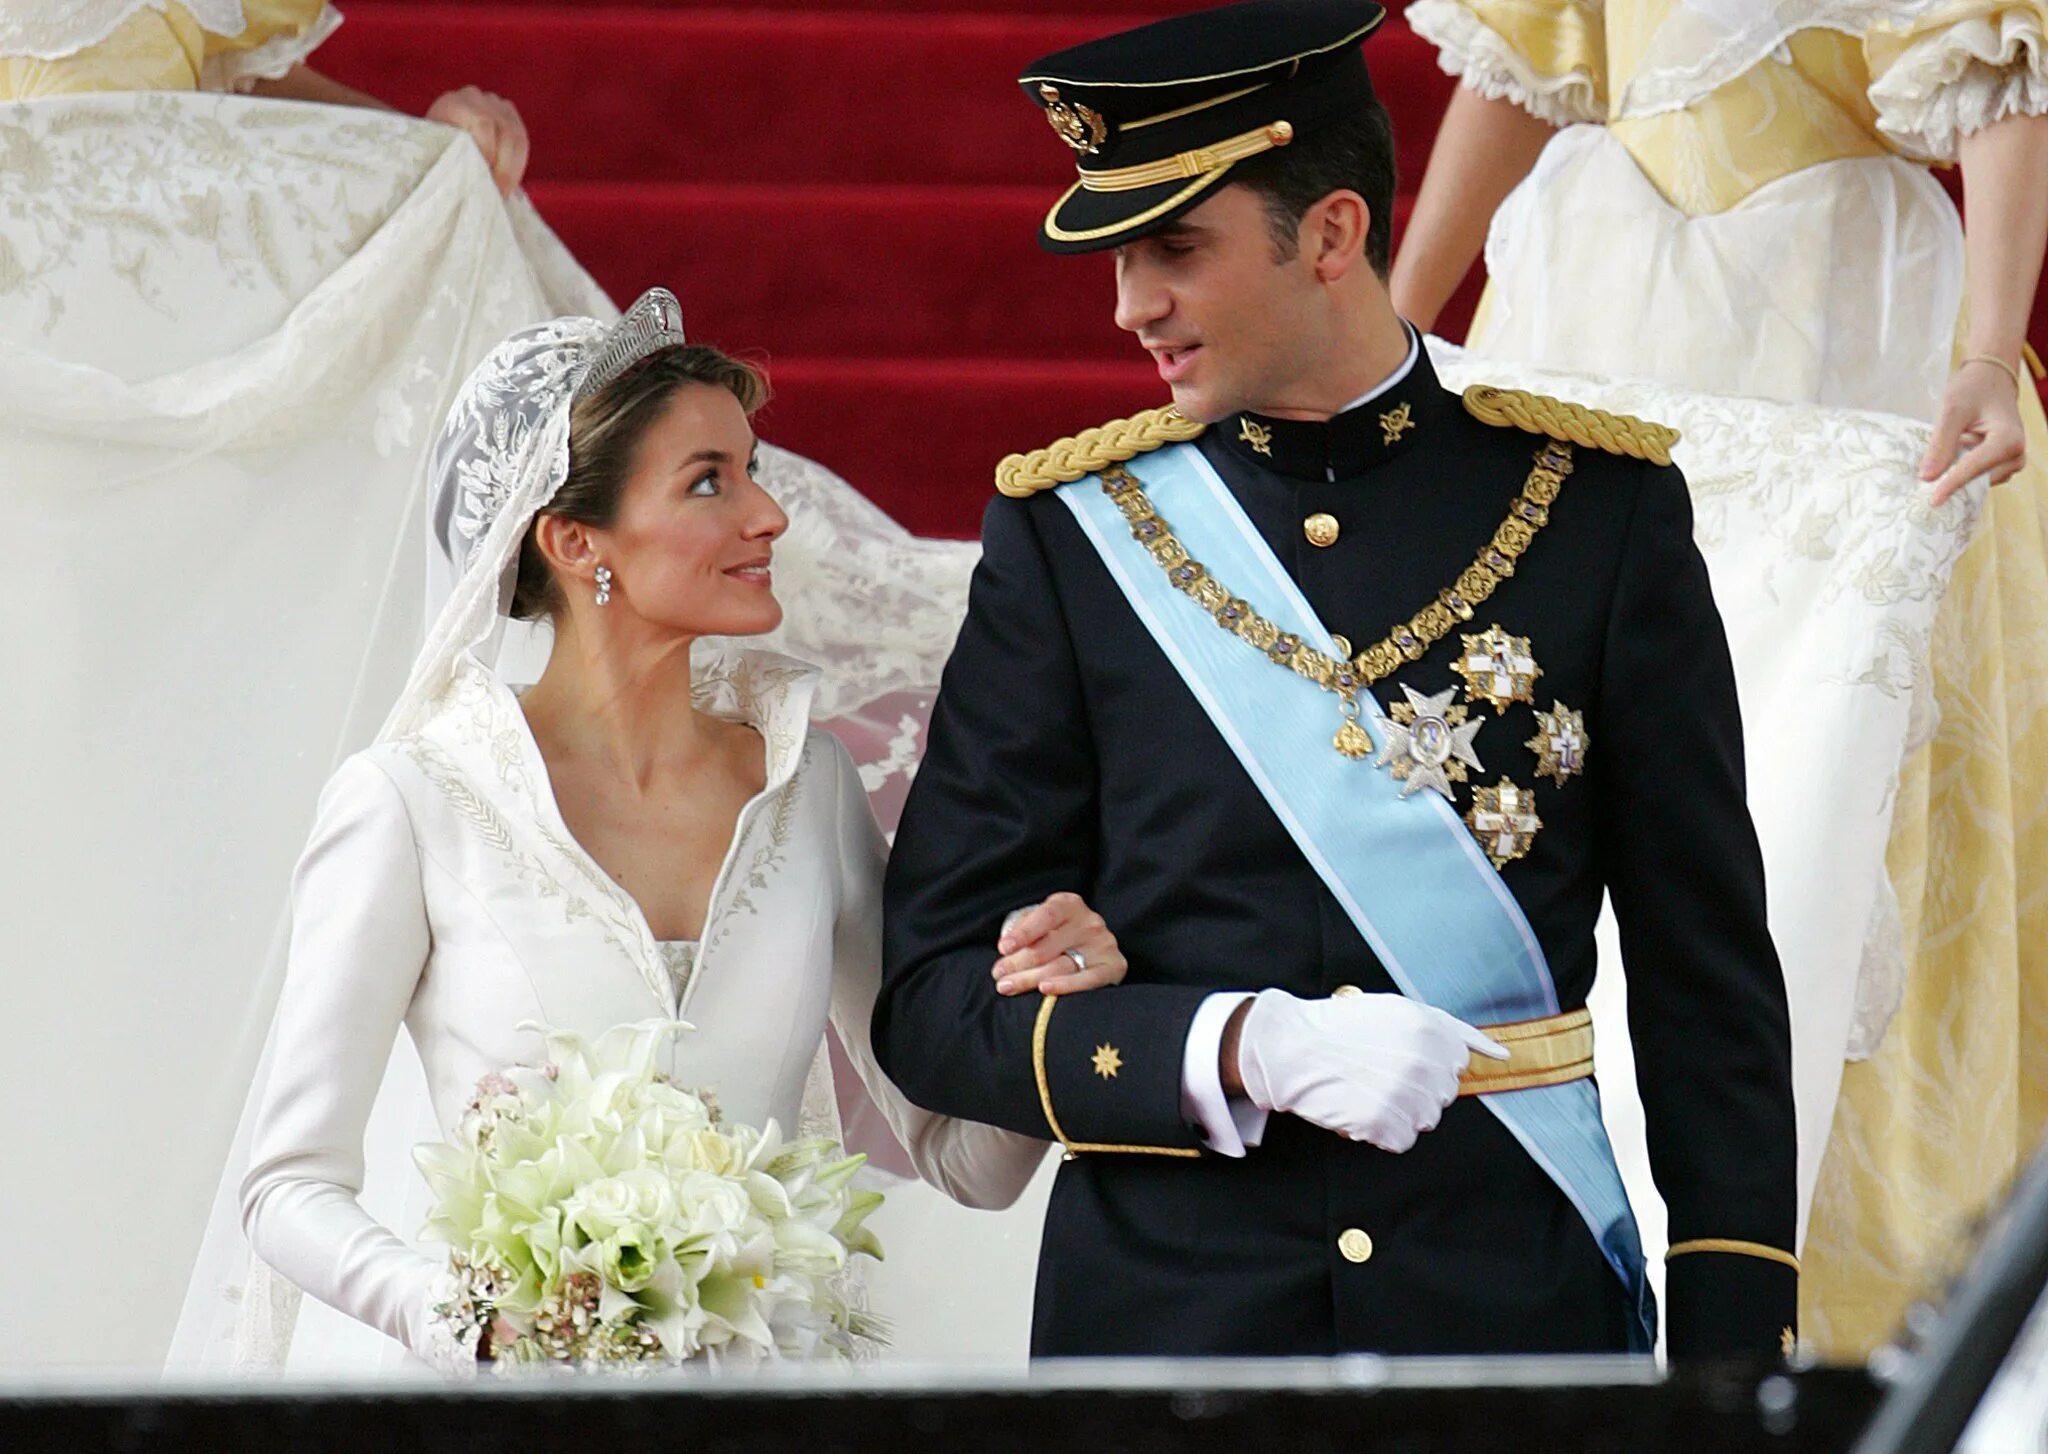 Королева Испании, Летисия, 2004 свадьба. Королева Испании Летиция свадьба. Король и Королева Испании Фелипе и Летиция. Свадьба королевы Летиции и короля Испании. Выйти замуж за наследного принца